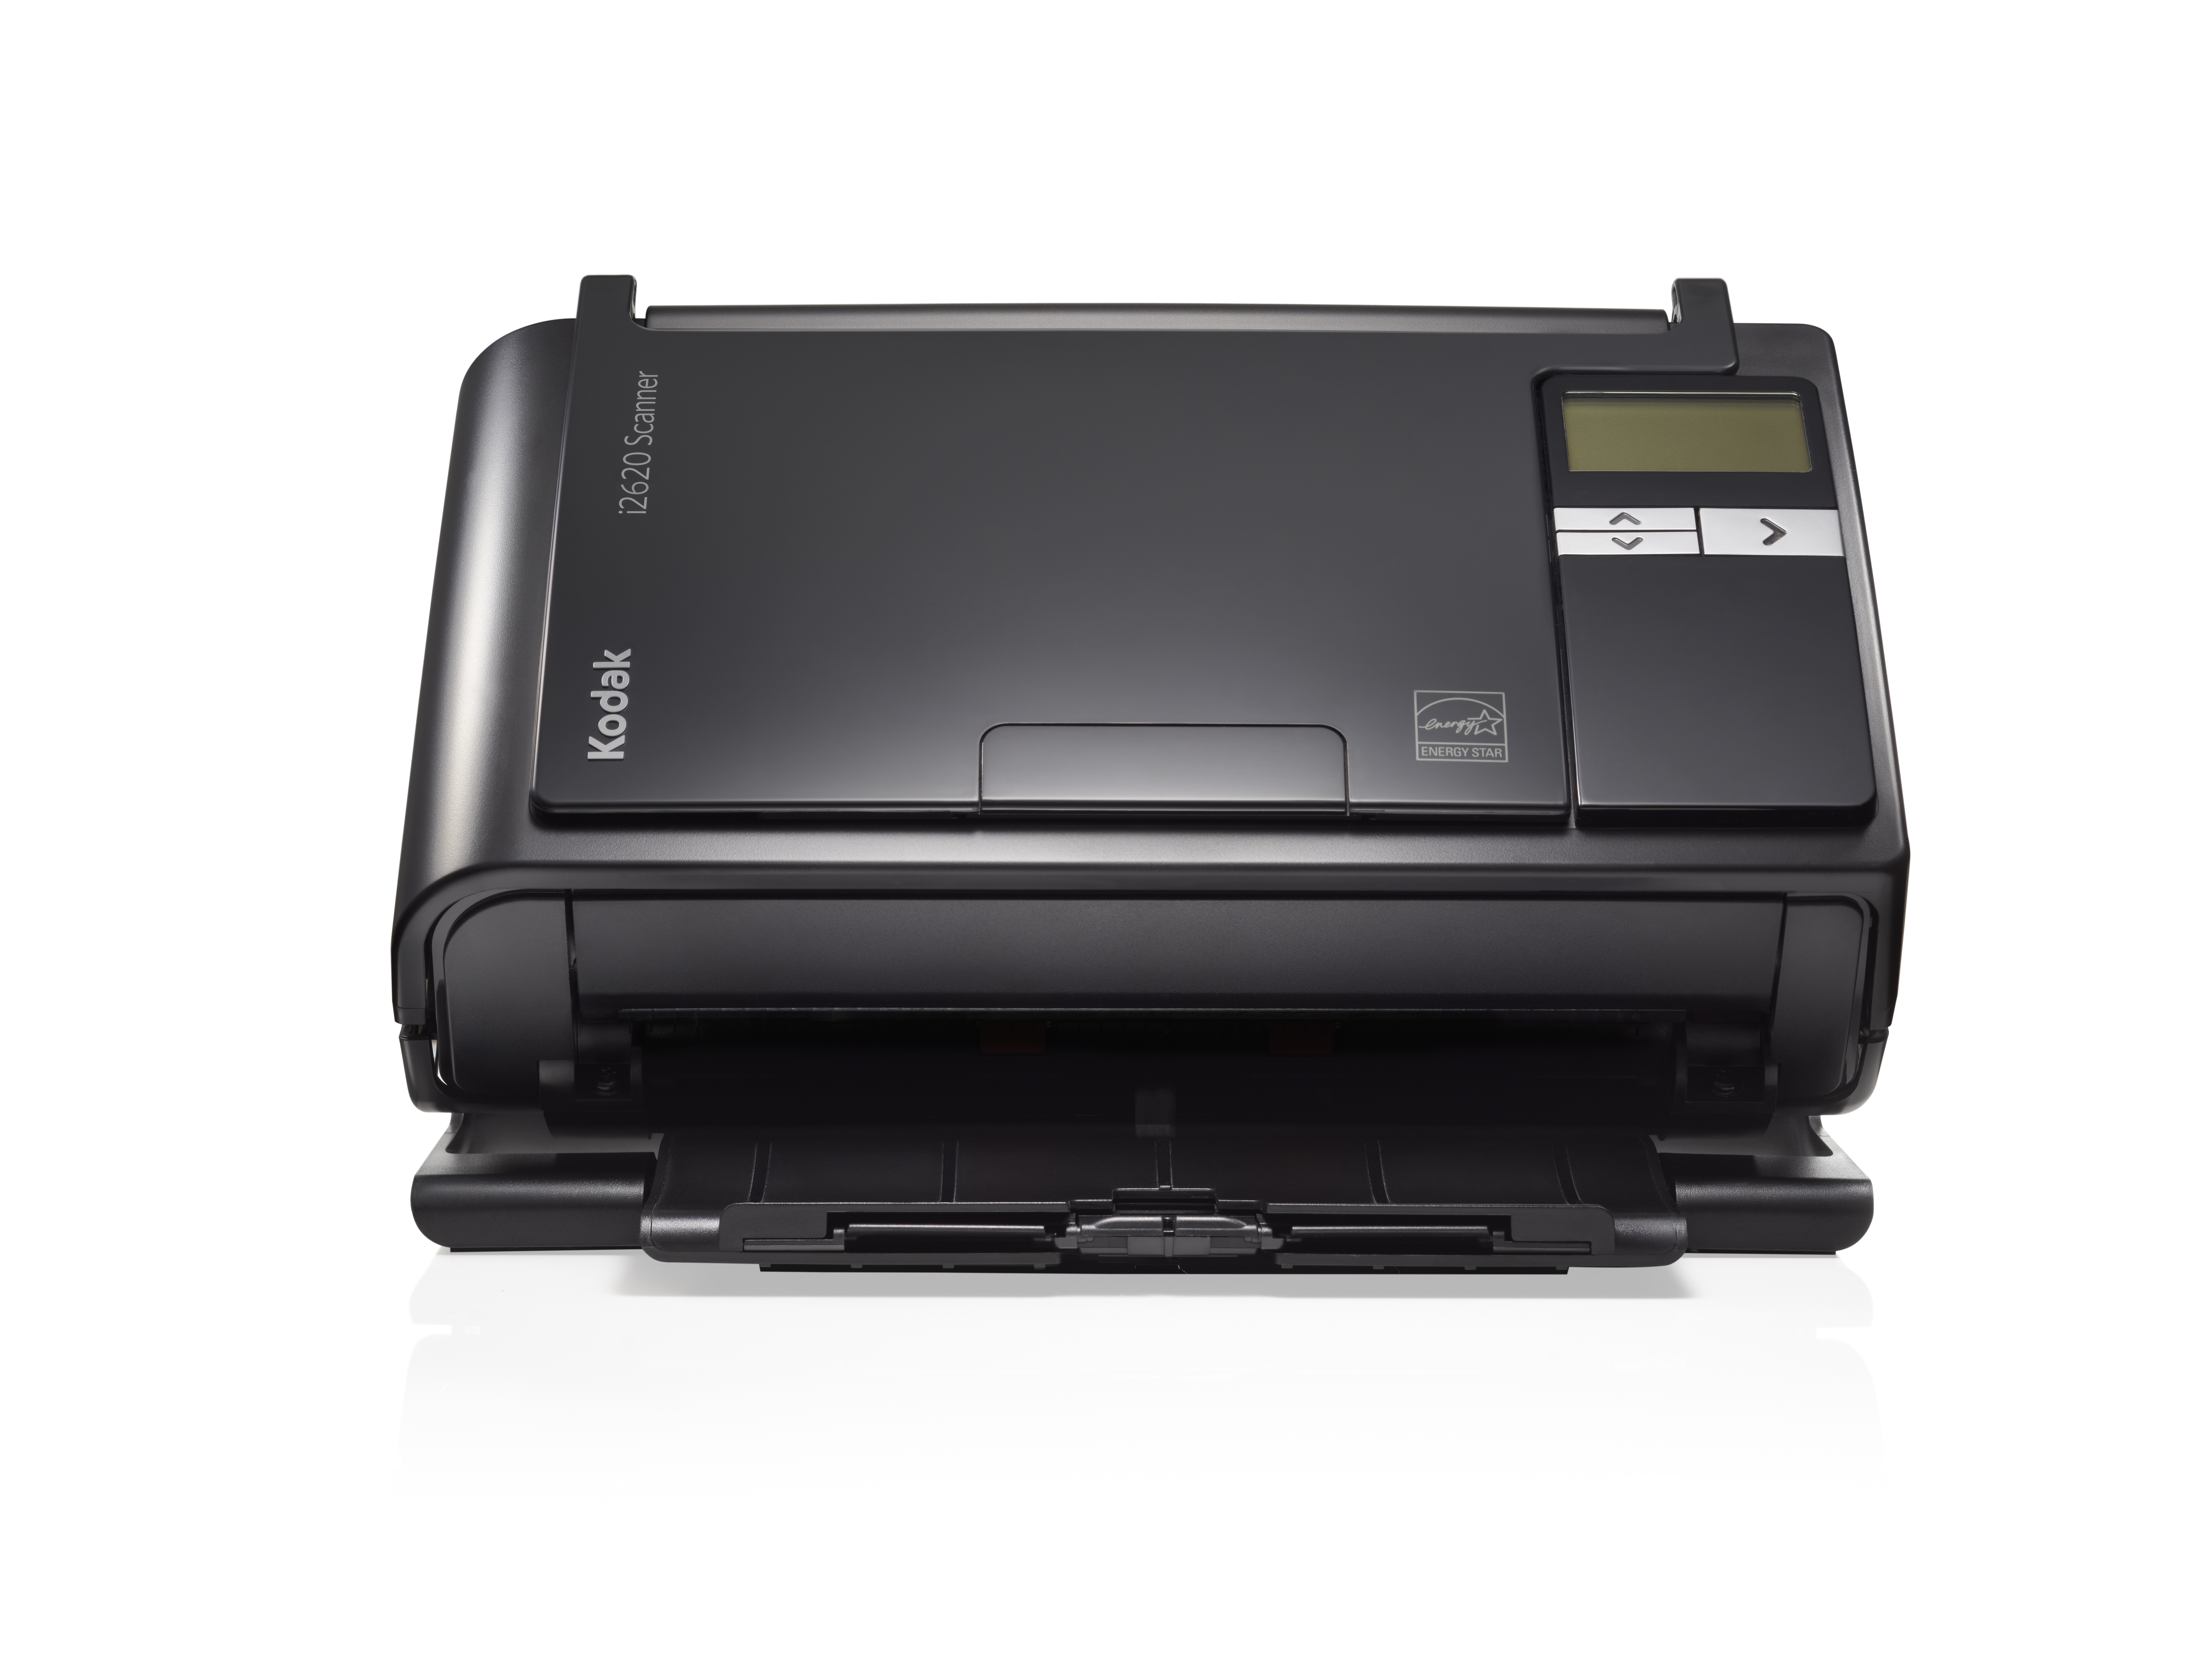 Escaner Kodak I2620 600X600 Dpi Escaner Color Usb 2.0 Negro 1501725